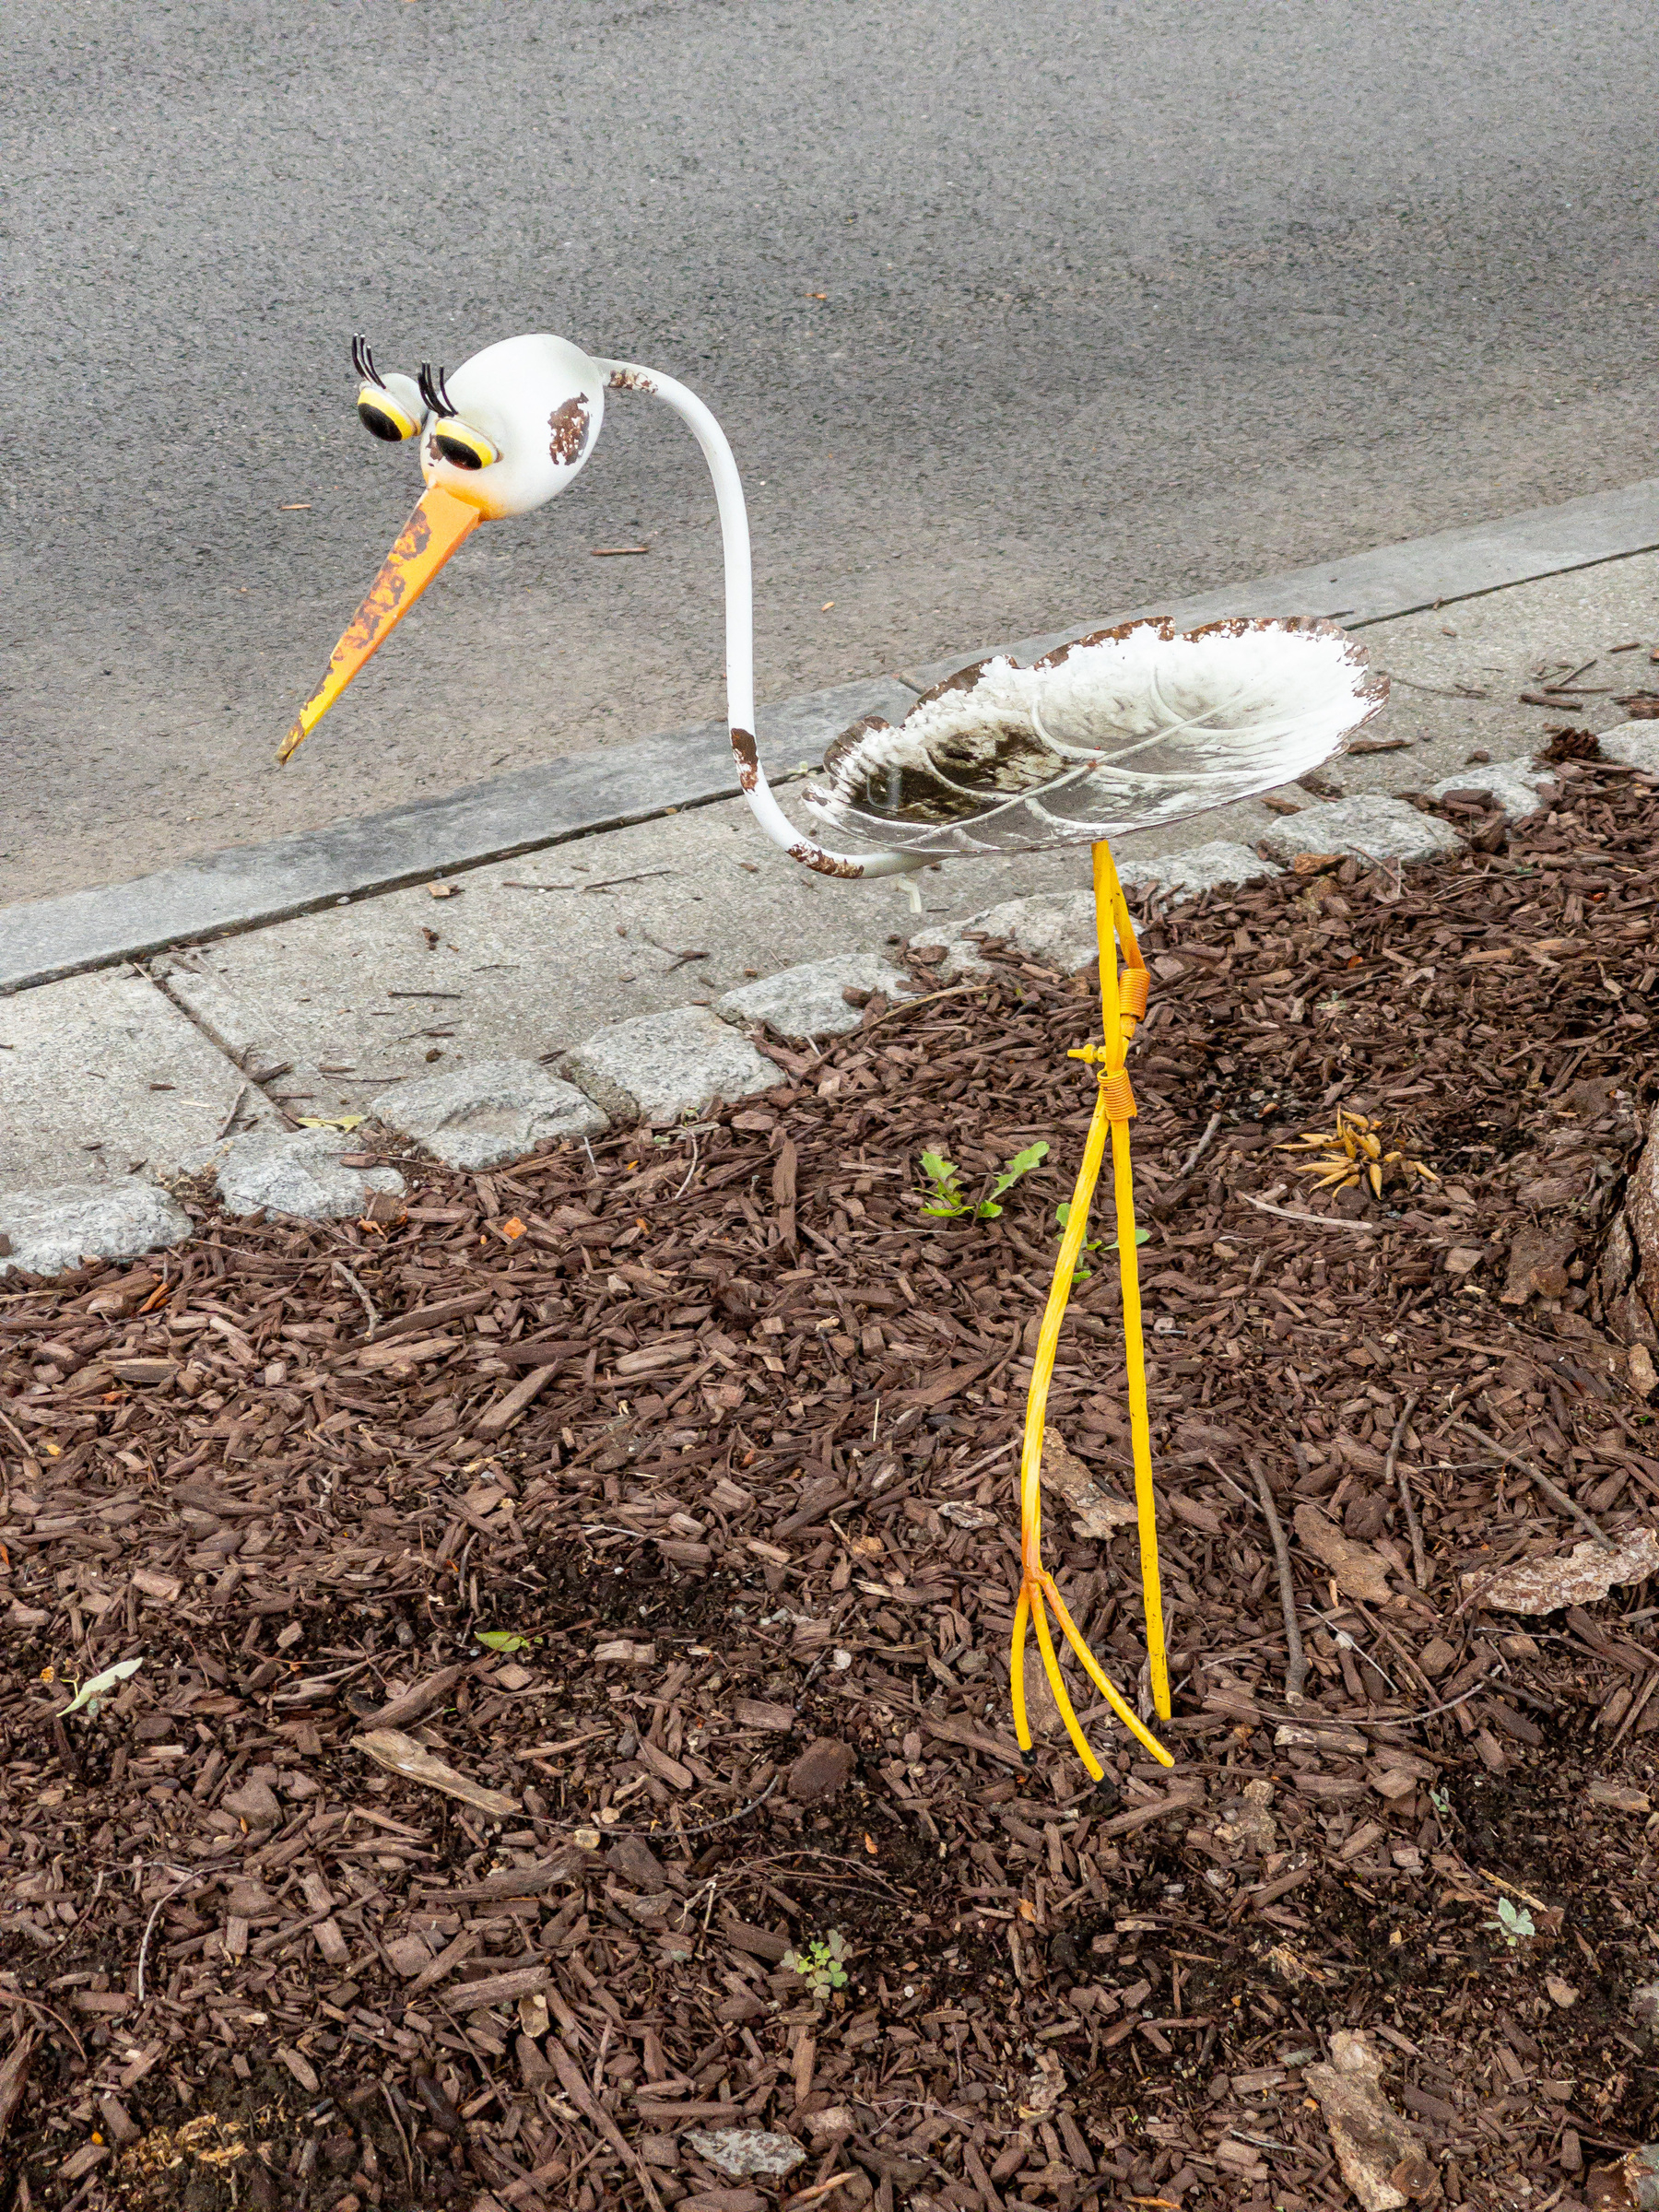 Metal sculpture stork in median by the street.